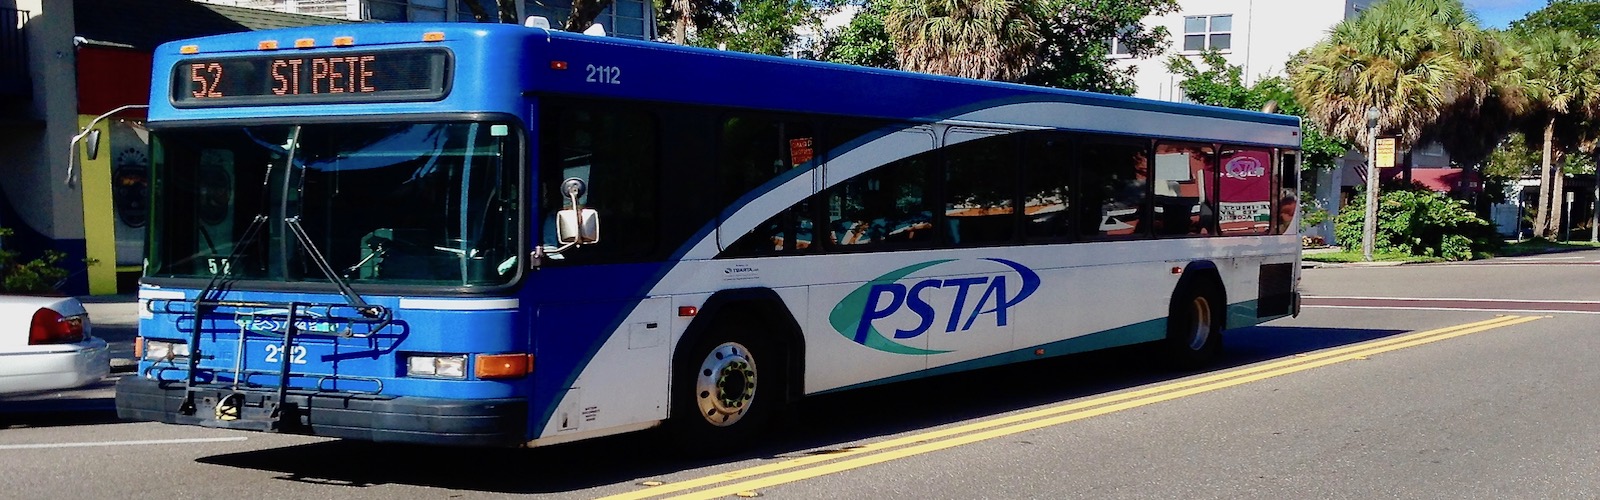 PSTA bus 